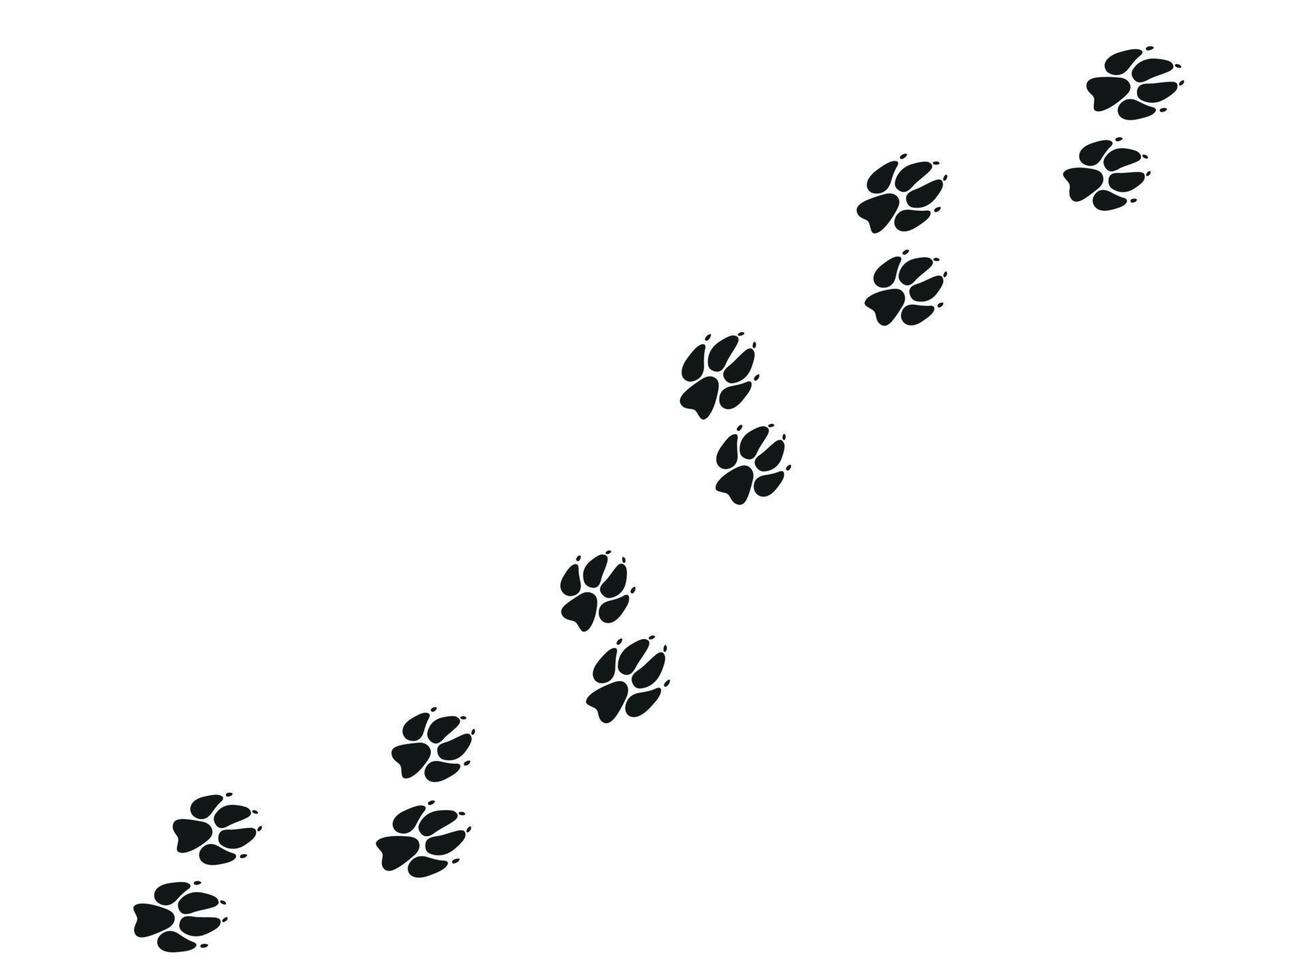 traces de pattes de renard. pattes et silhouettes d'animaux. illustration vectorielle vecteur